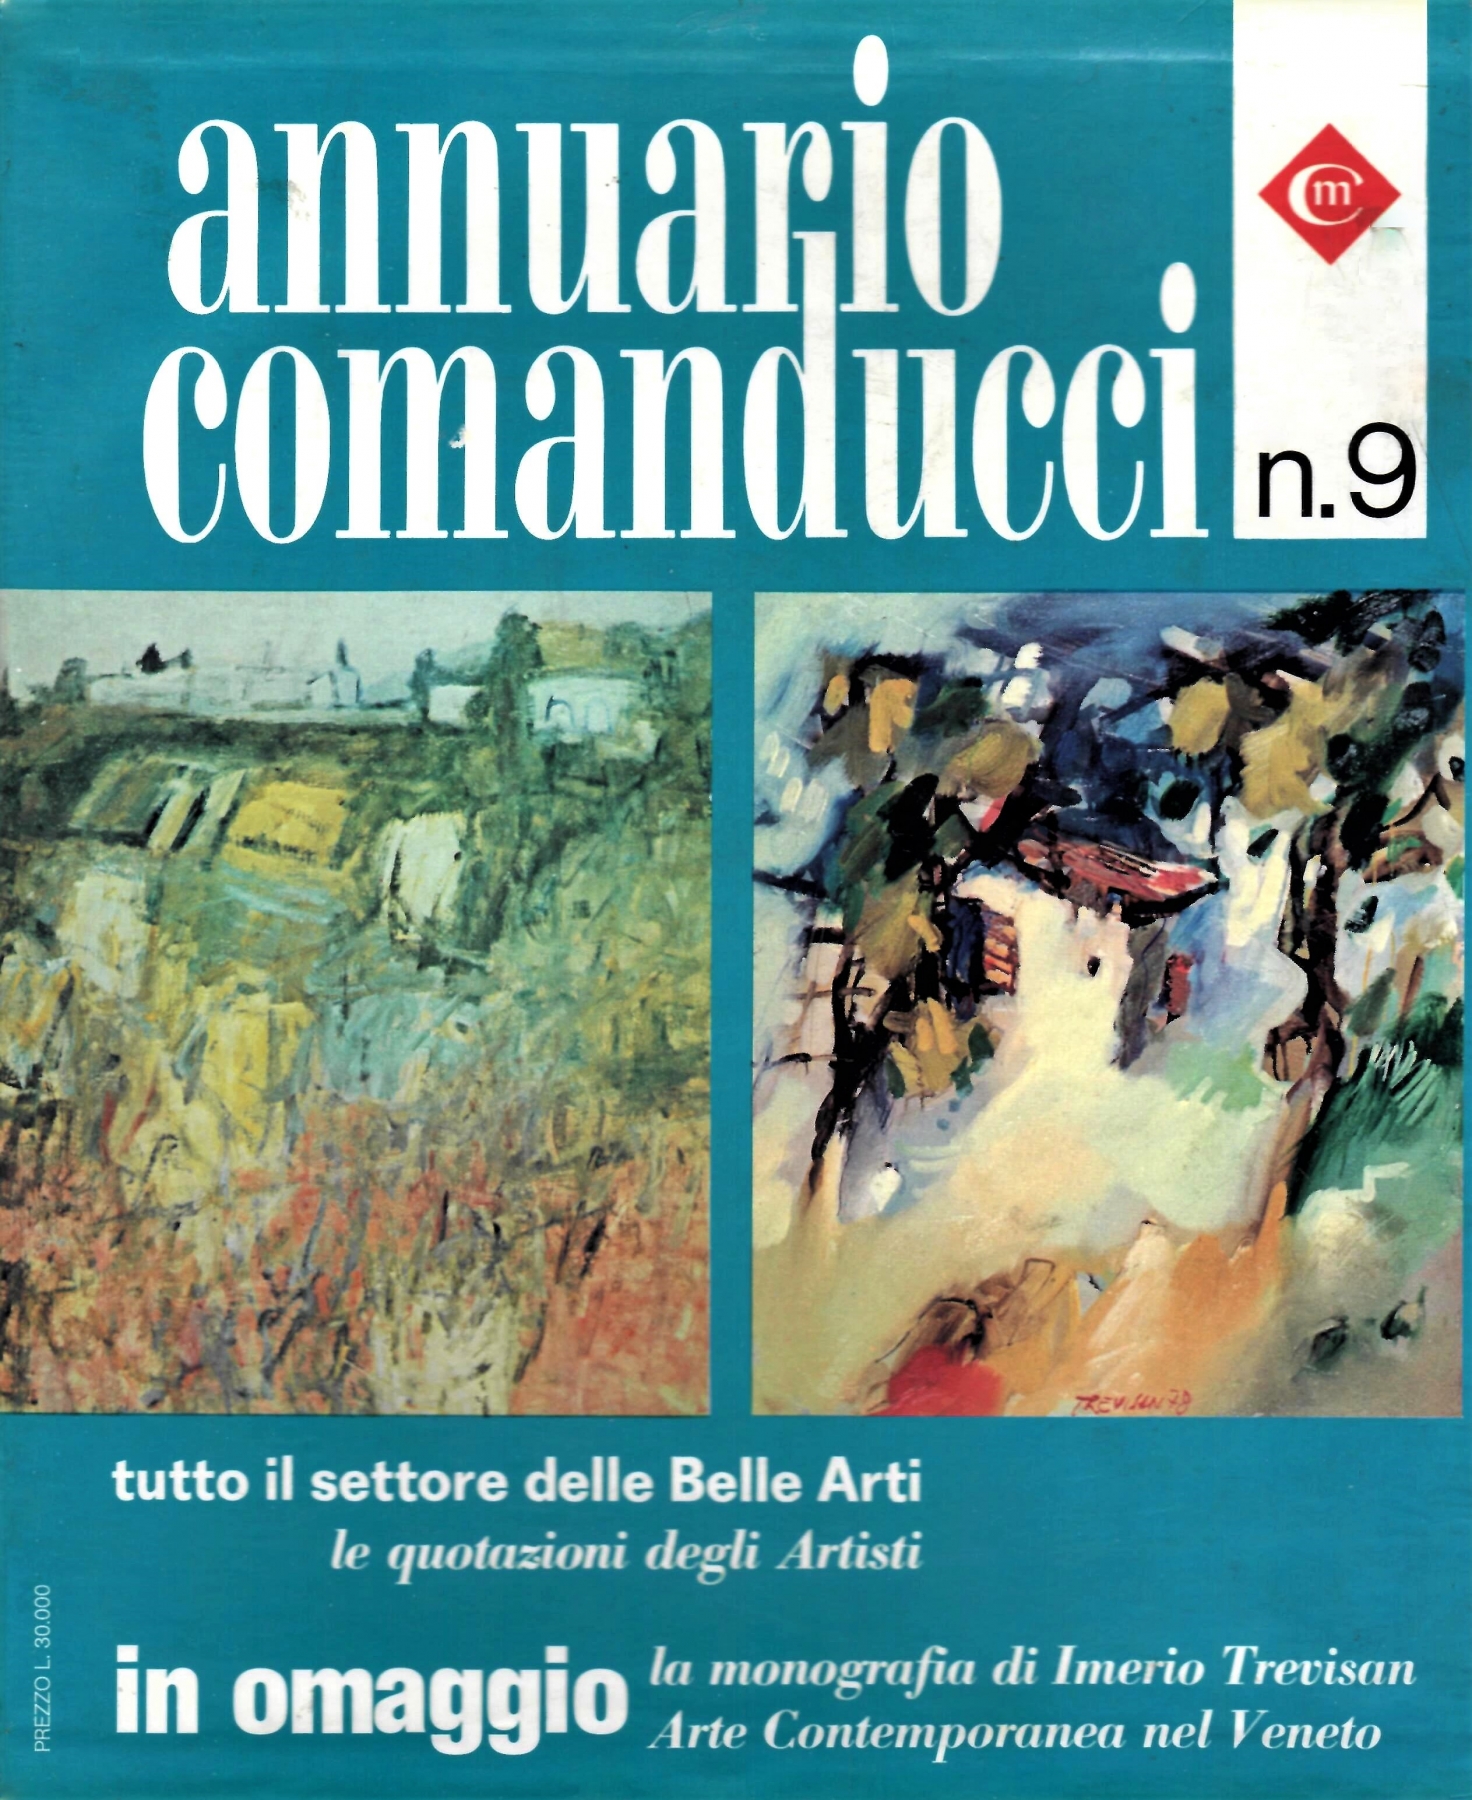 <b>Annuario Comanducci n. 9  del 1982 </b>, Le Quotazioni degli Artisti, Pubblicazione di dipinto di A. Bertrand, 'Ai confini della coscienza', 60x80cm, pag. 184, del 1971  